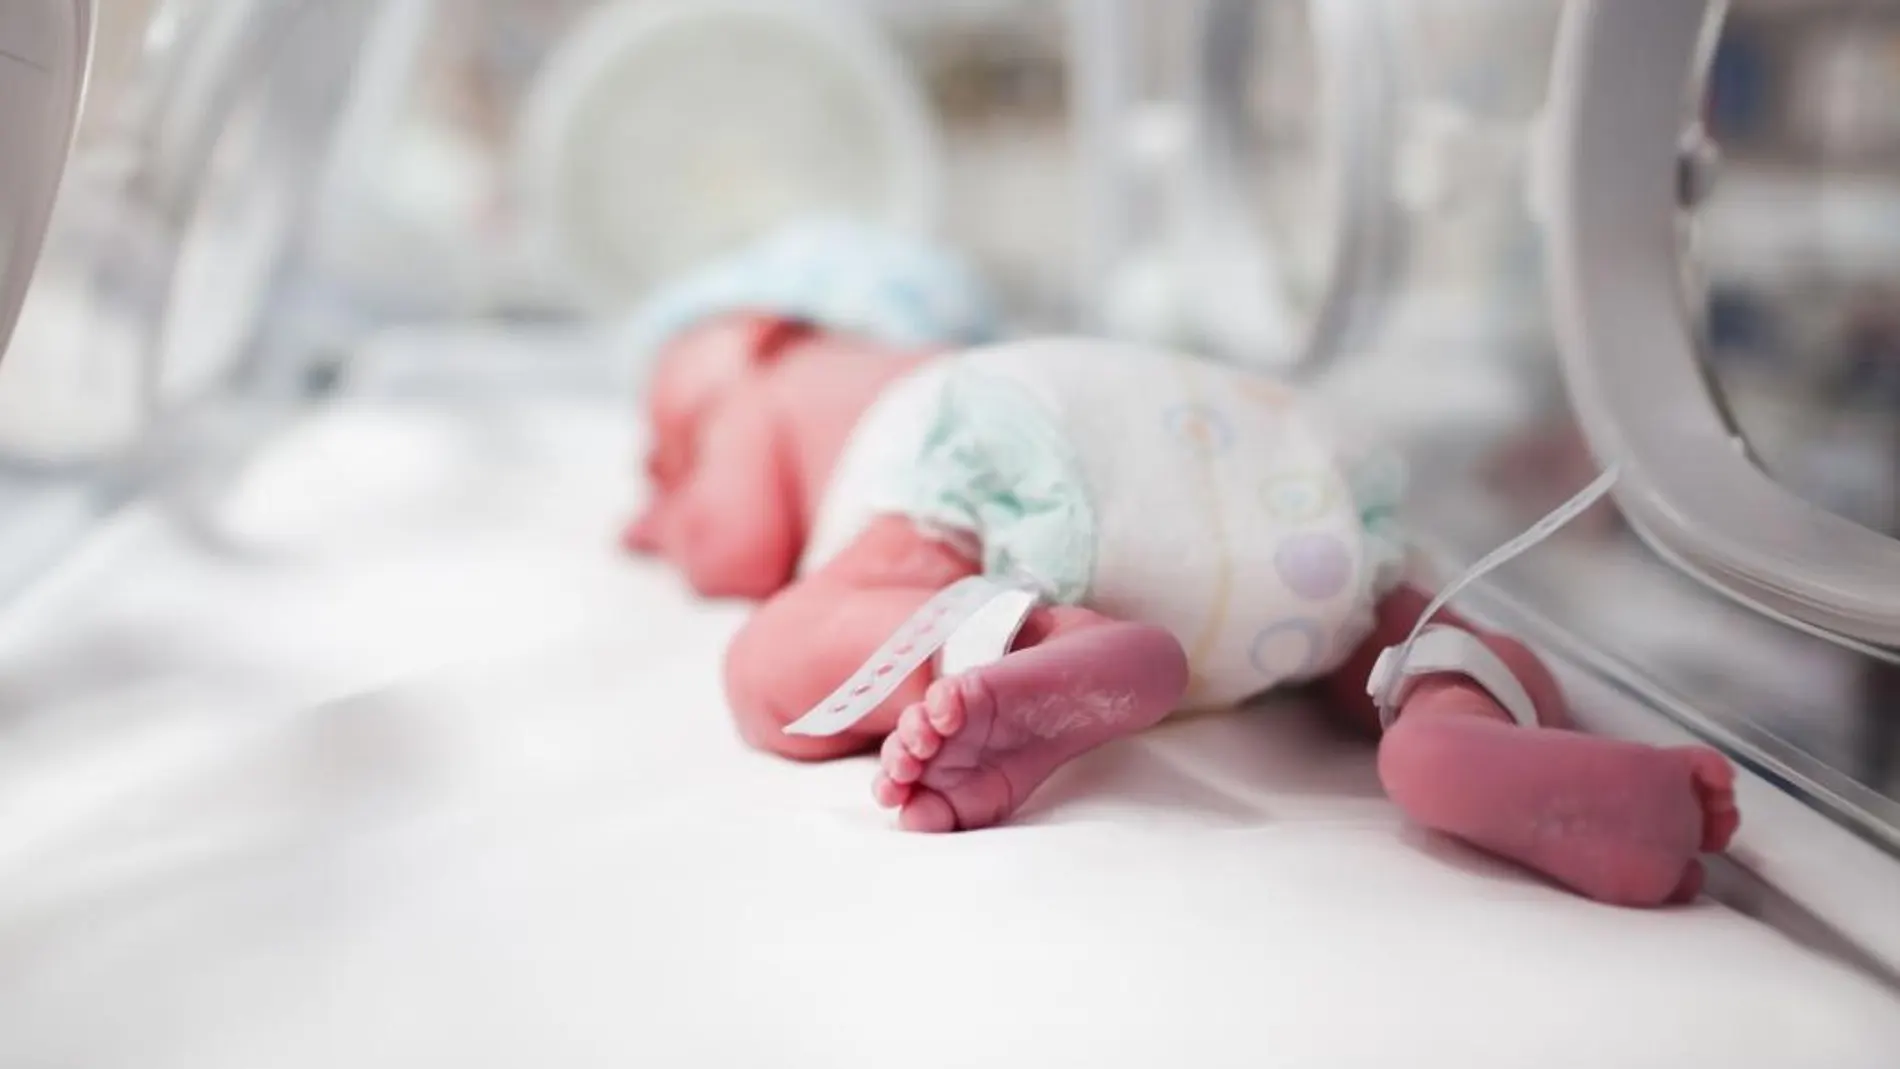 Un bebé prematuro en una incubadora